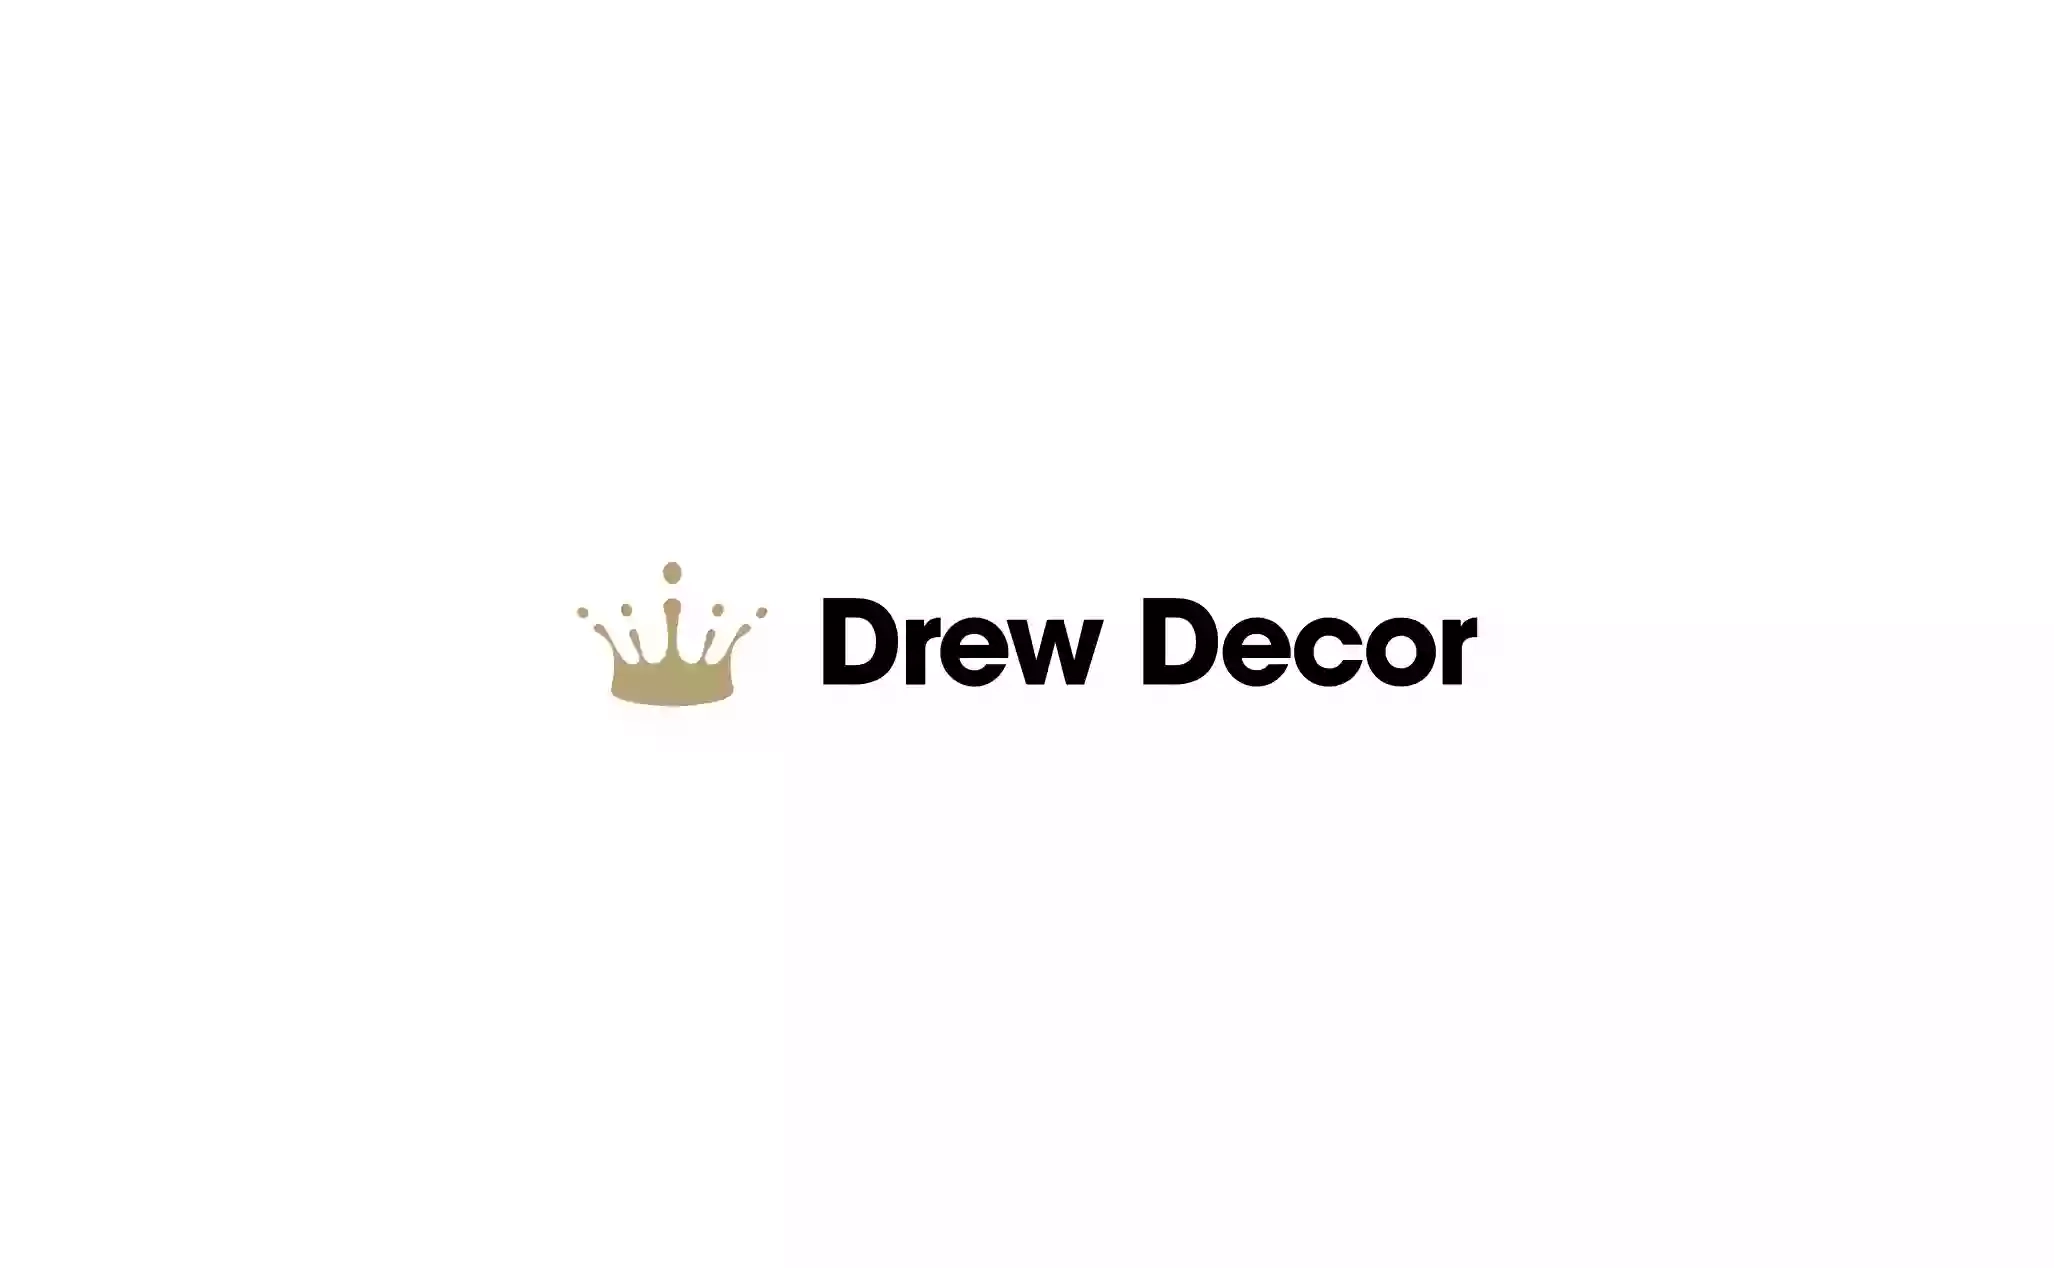 Drew Decor Store